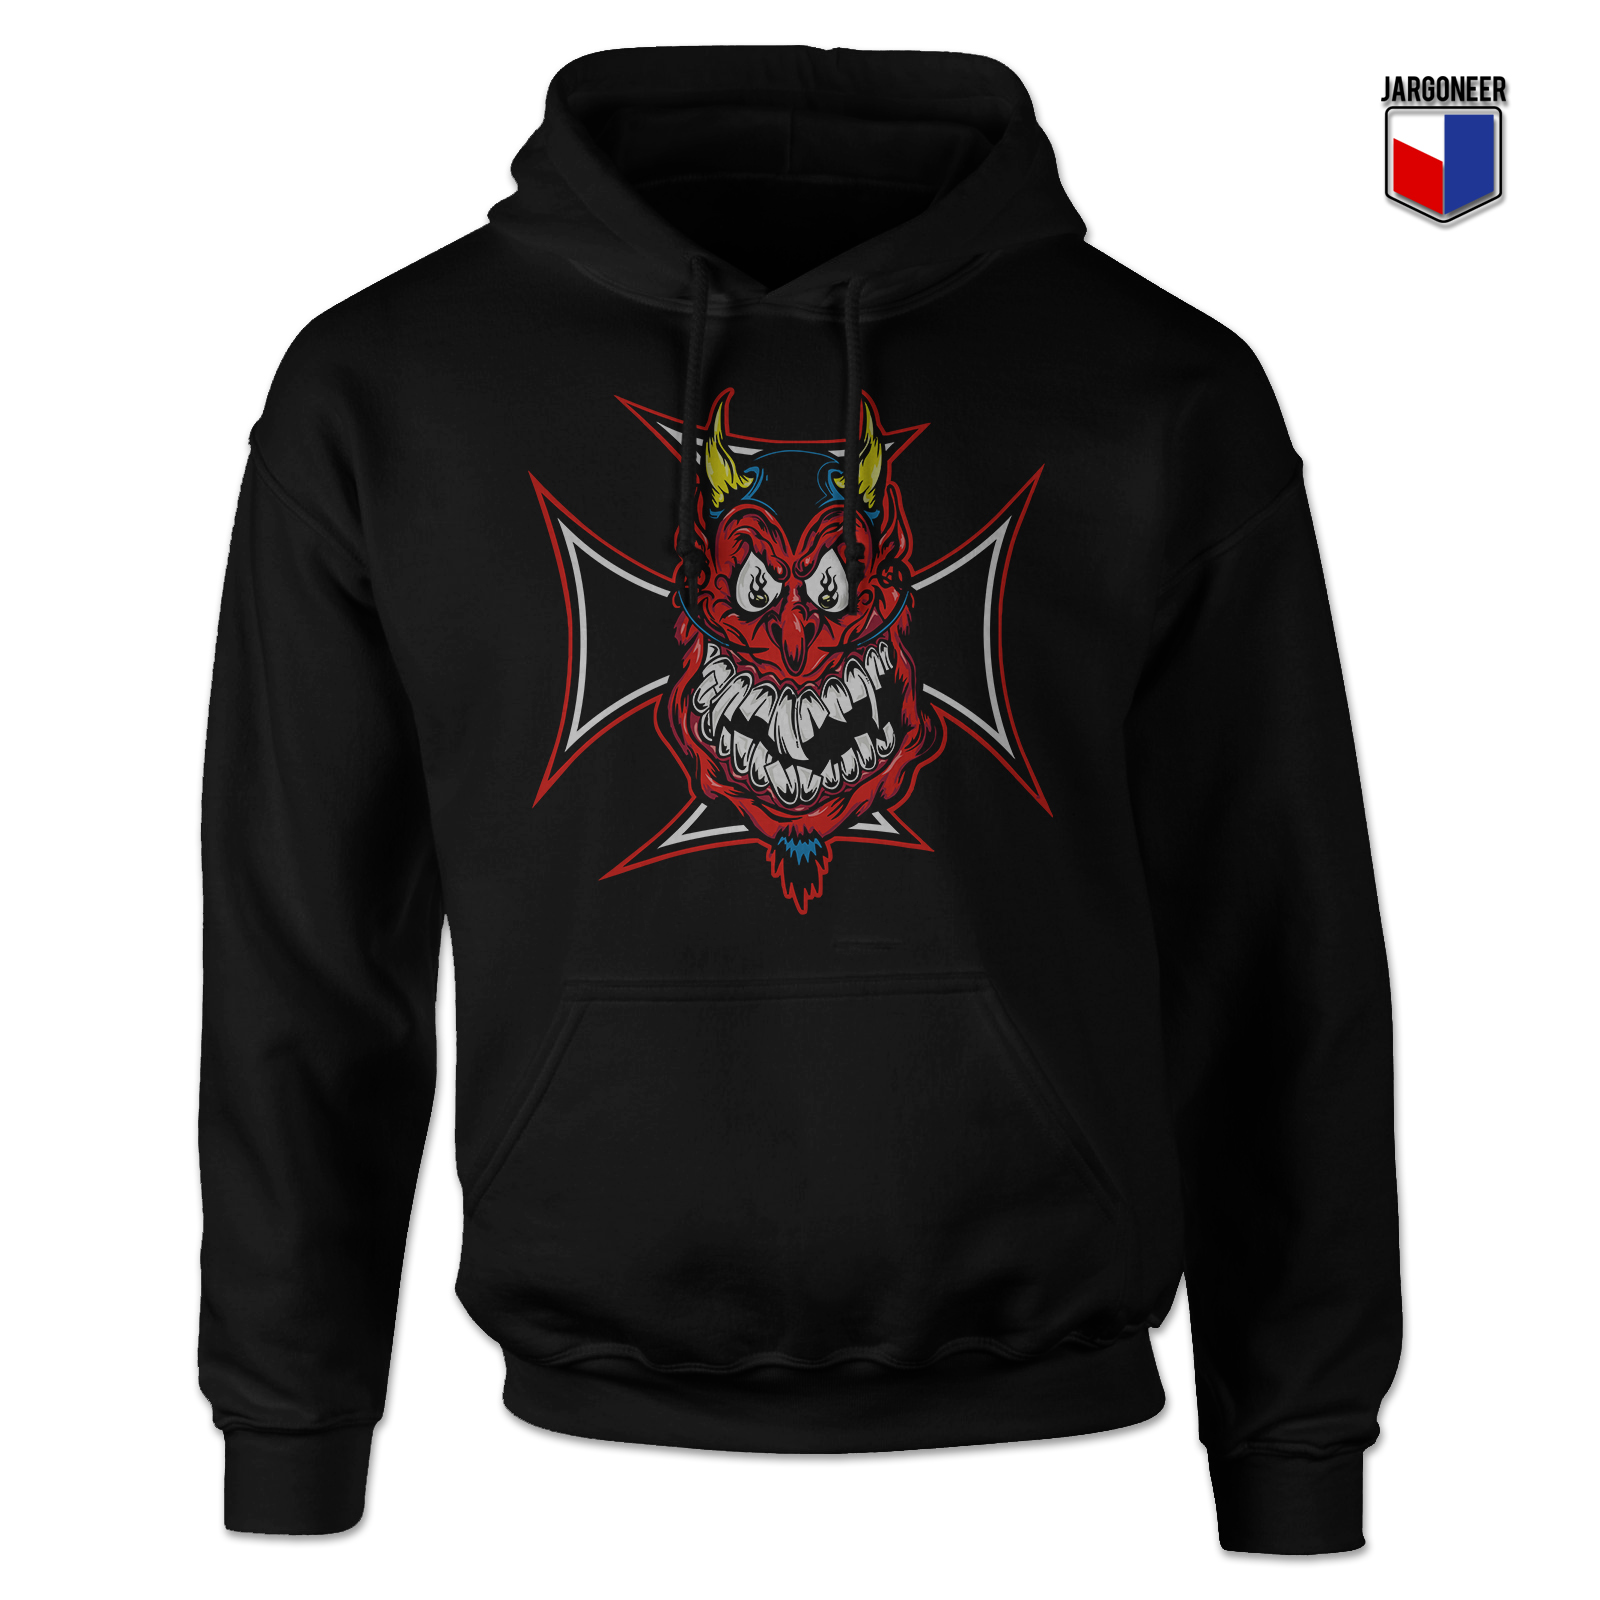 Chopper Devil Black Hoody - Shop Unique Graphic Cool Shirt Designs